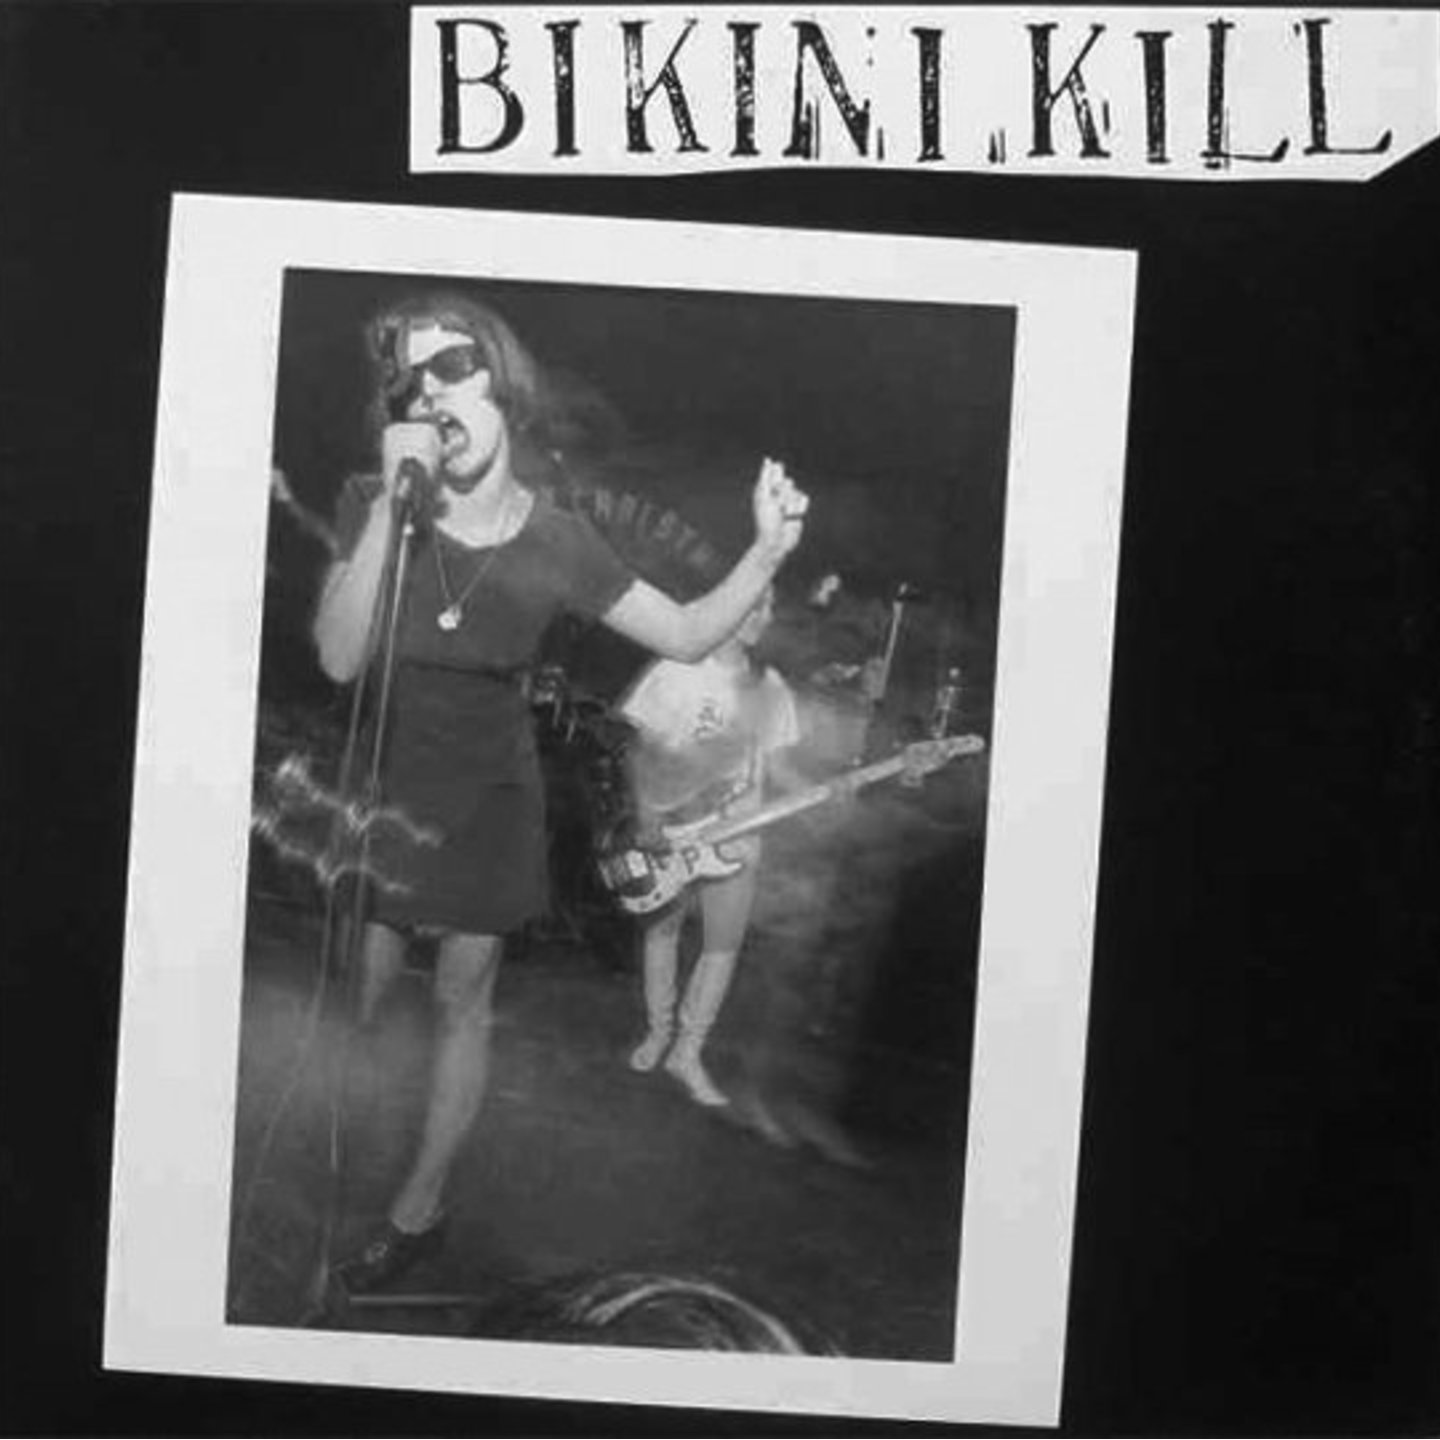 BIKINI KILL - Bikini Kill 12" (Pink vinyl)